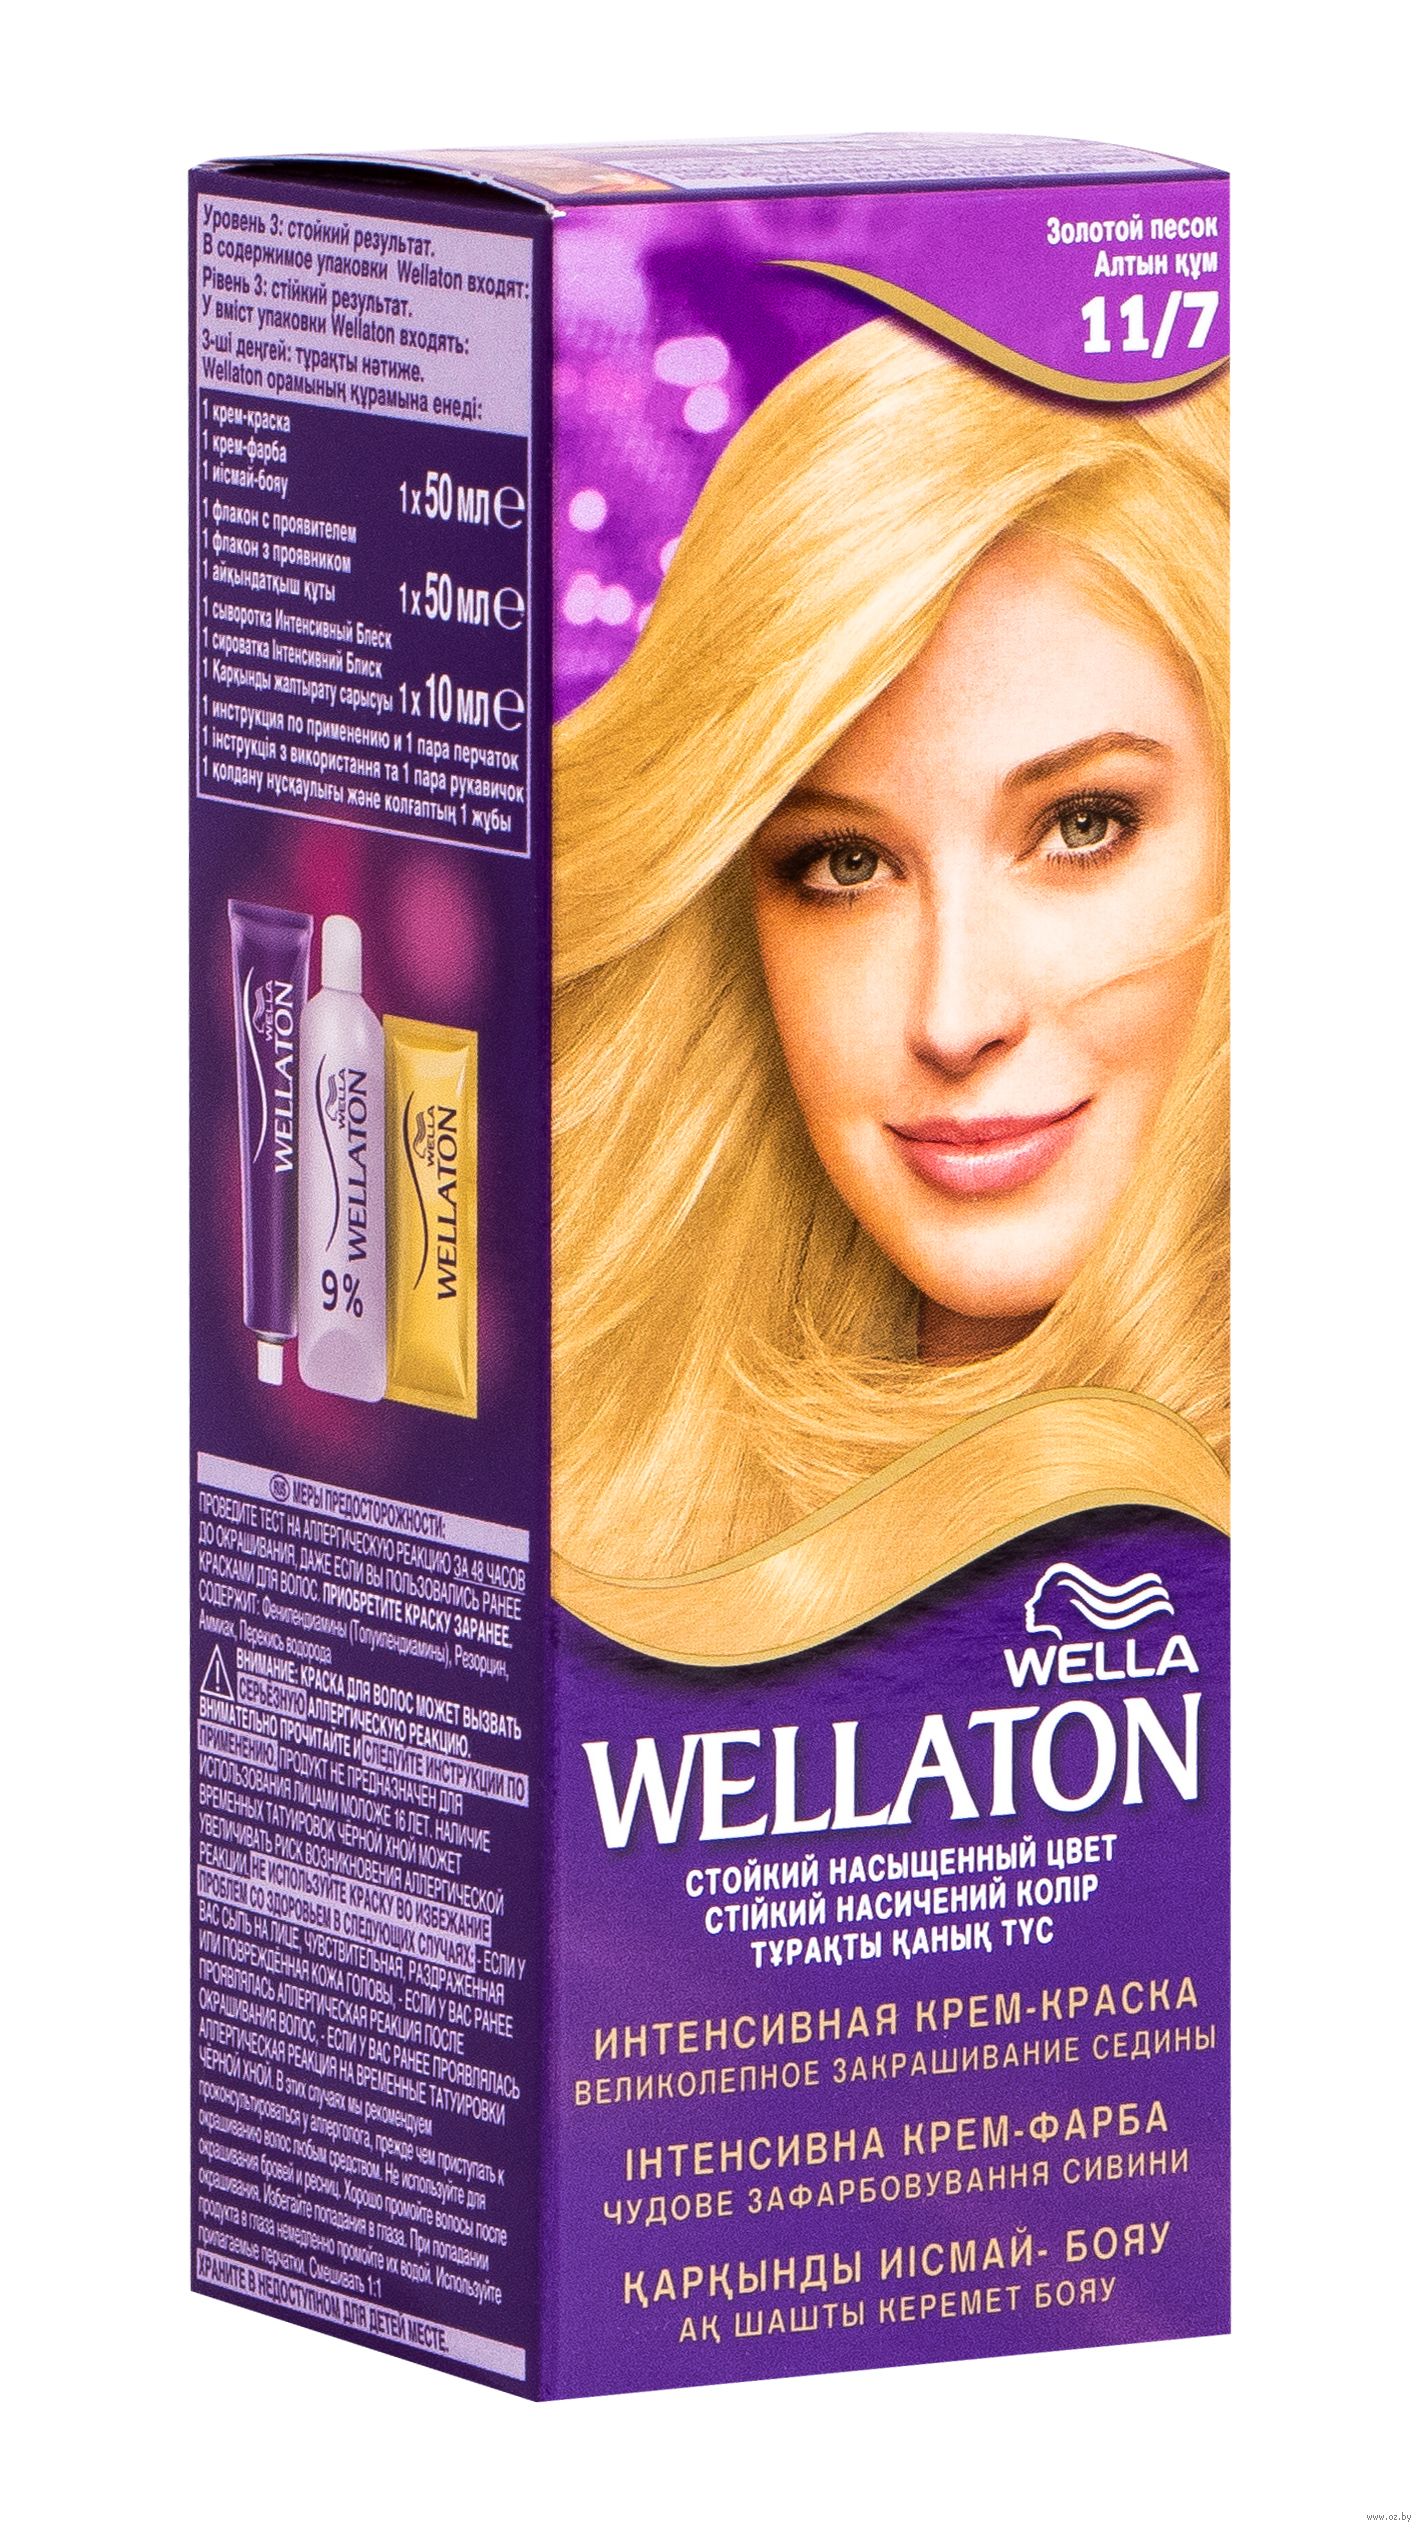 Крем-краска для волос "wellaton" тон: 9/1, жемчуг wella: купить в.